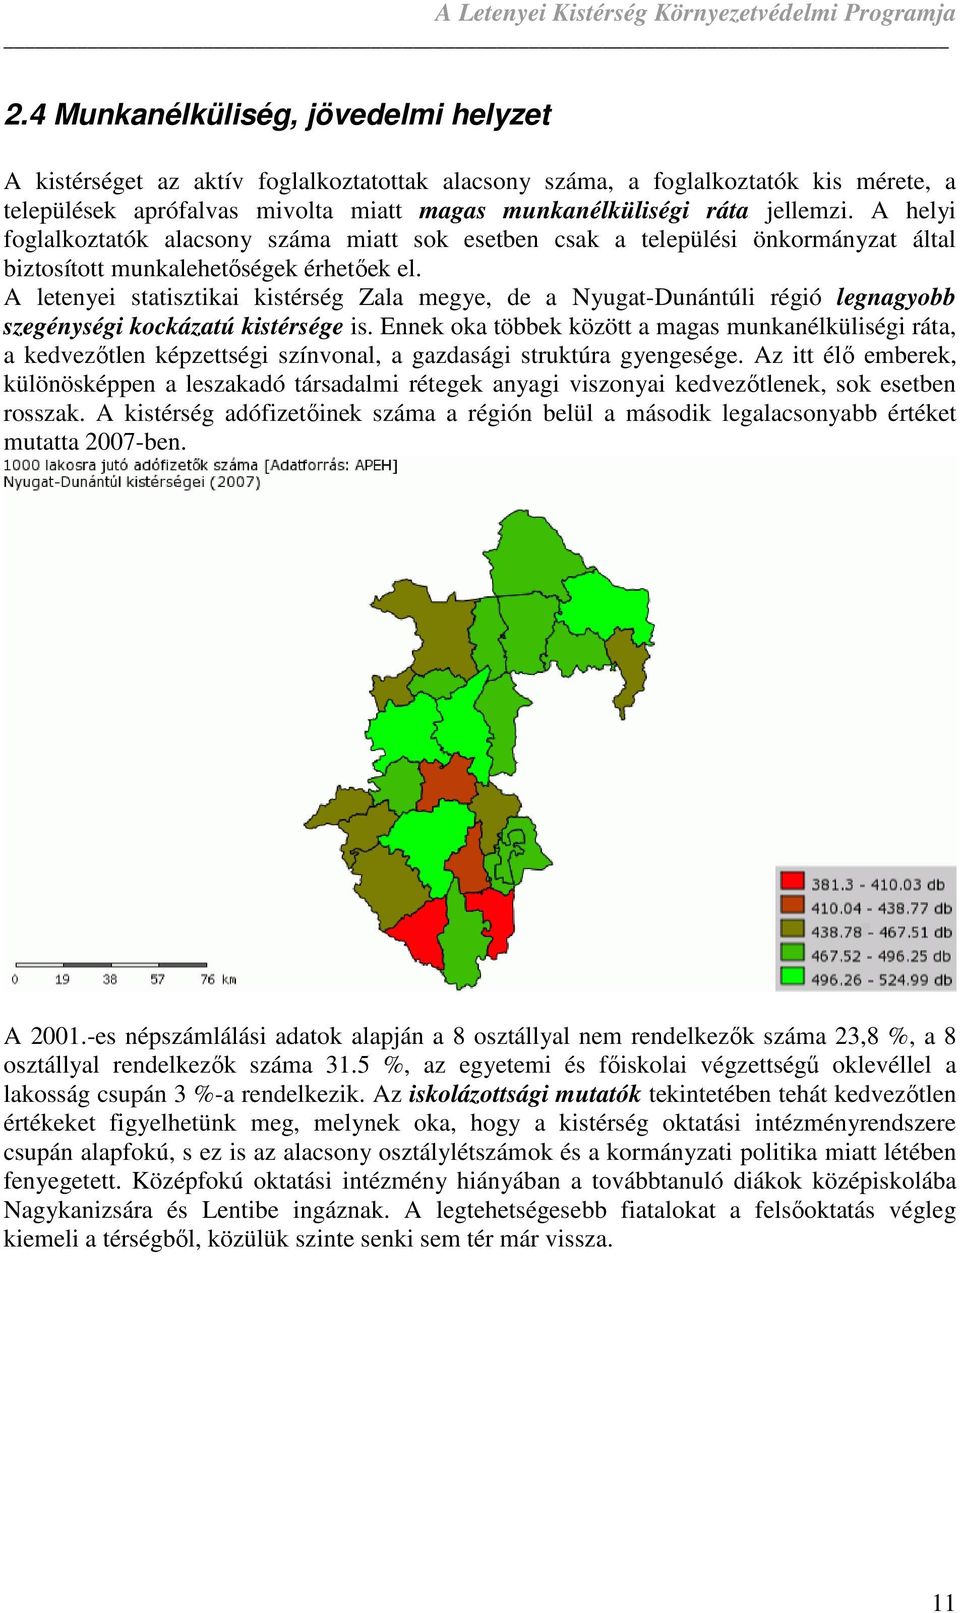 A letenyei statisztikai kistérség Zala megye, de a Nyugat-Dunántúli régió legnagyobb szegénységi kockázatú kistérsége is.